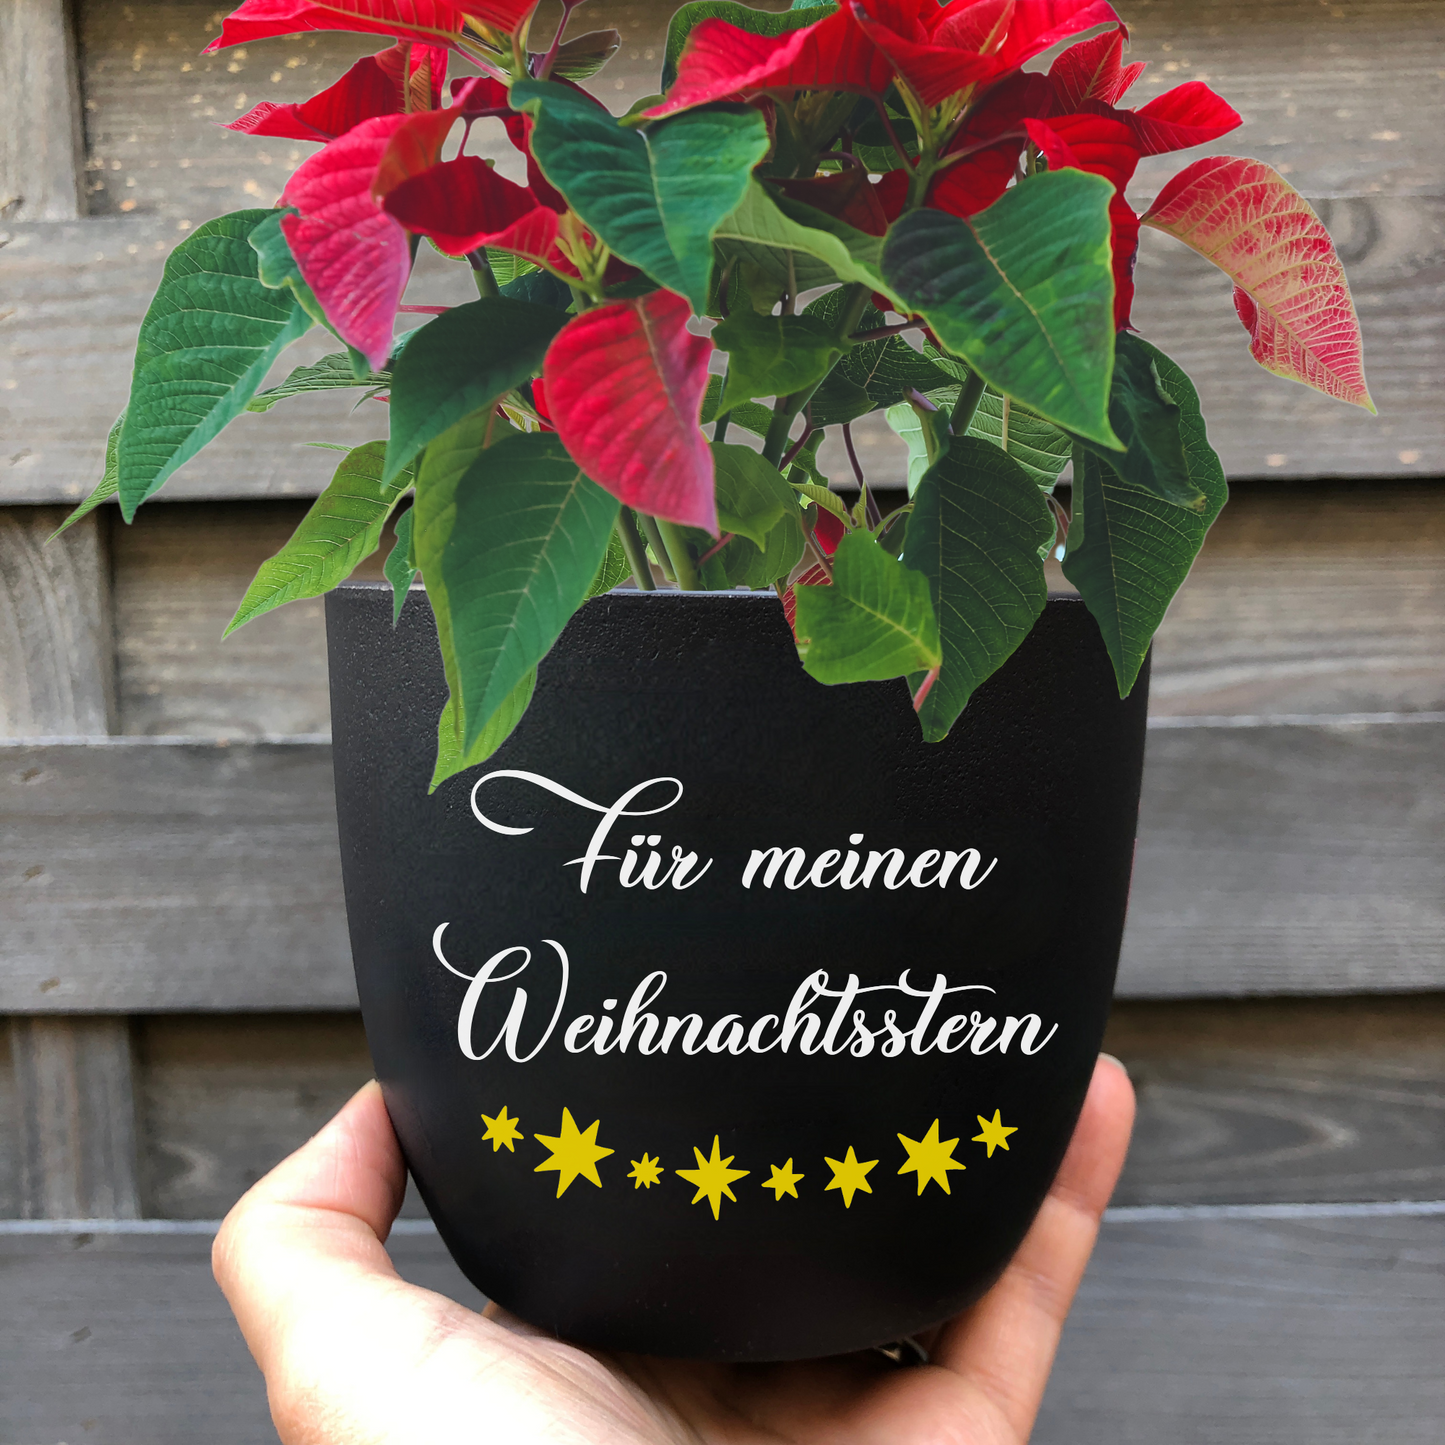 schwarzer Blumentopf mit dem Spruch "Für meinen Weihnachtsstern" - Weihnachtsgeschenk für Freundin